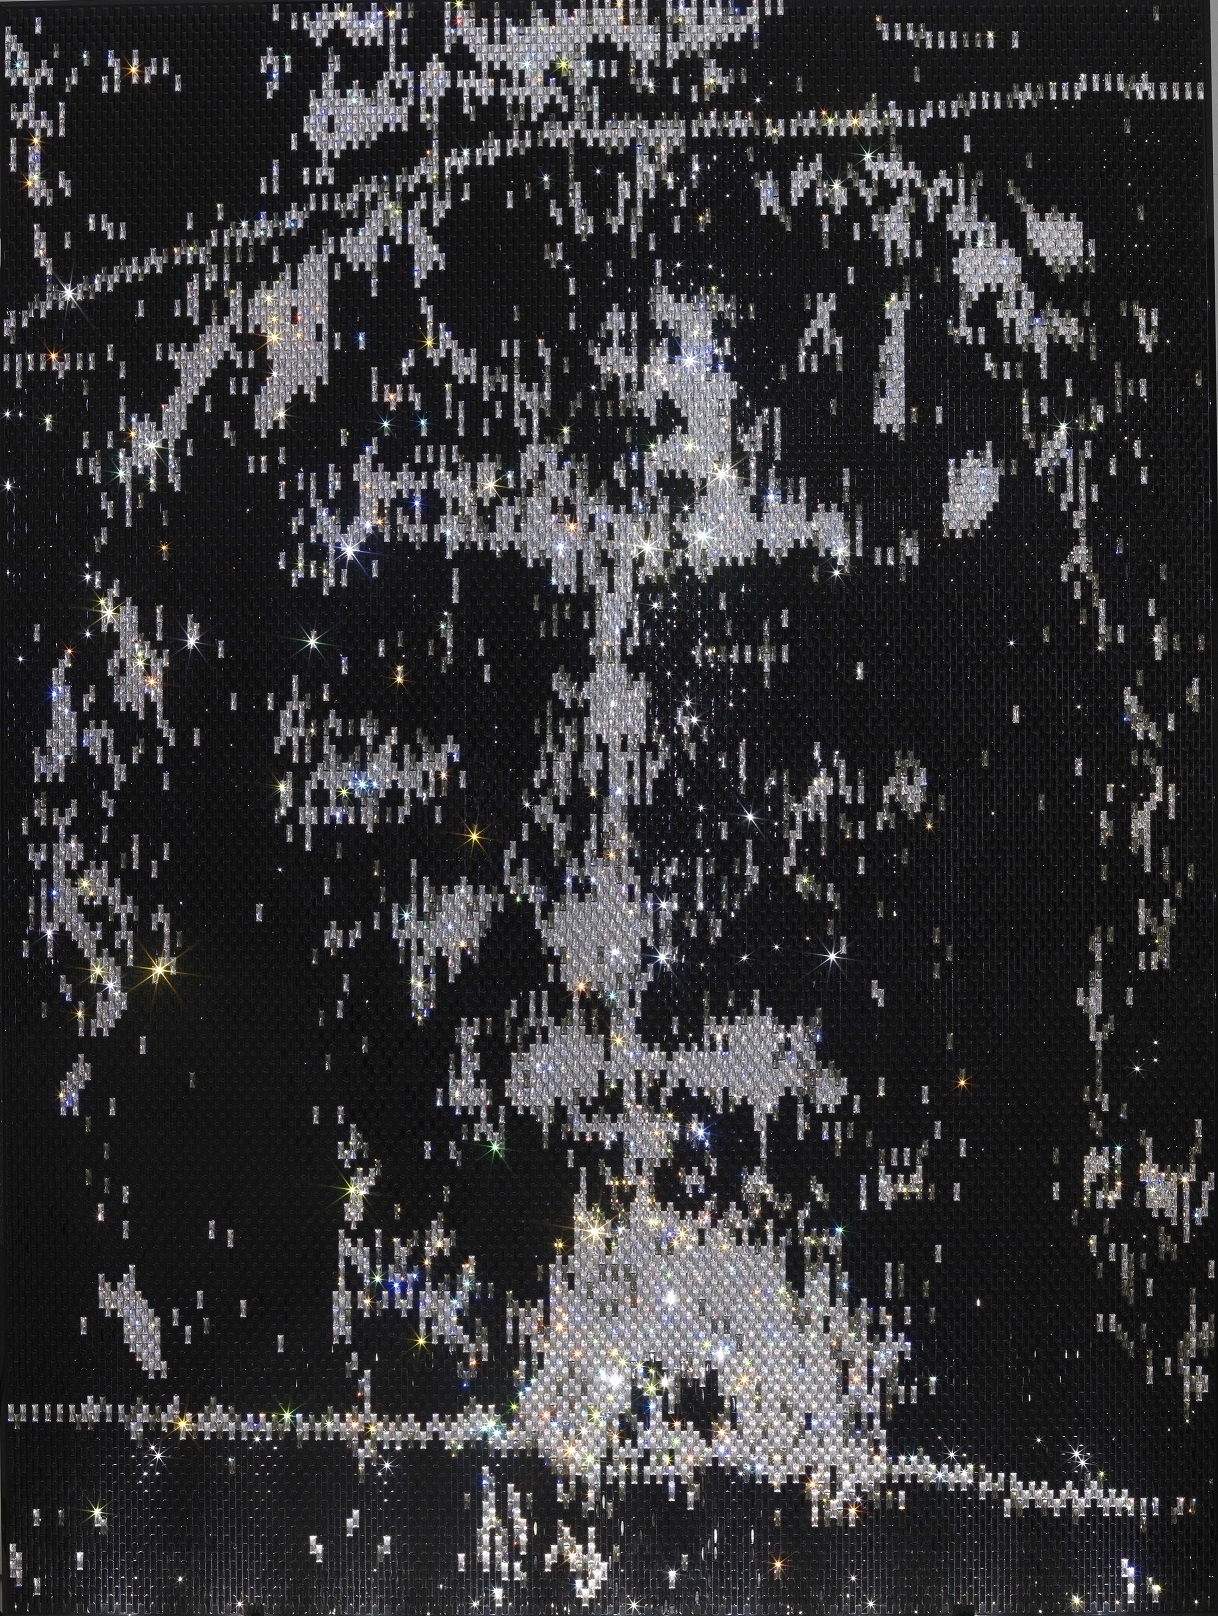 Sindone Nera, Stefano Curto, 200x150 cm, 17.843 cristalli su plexiglas